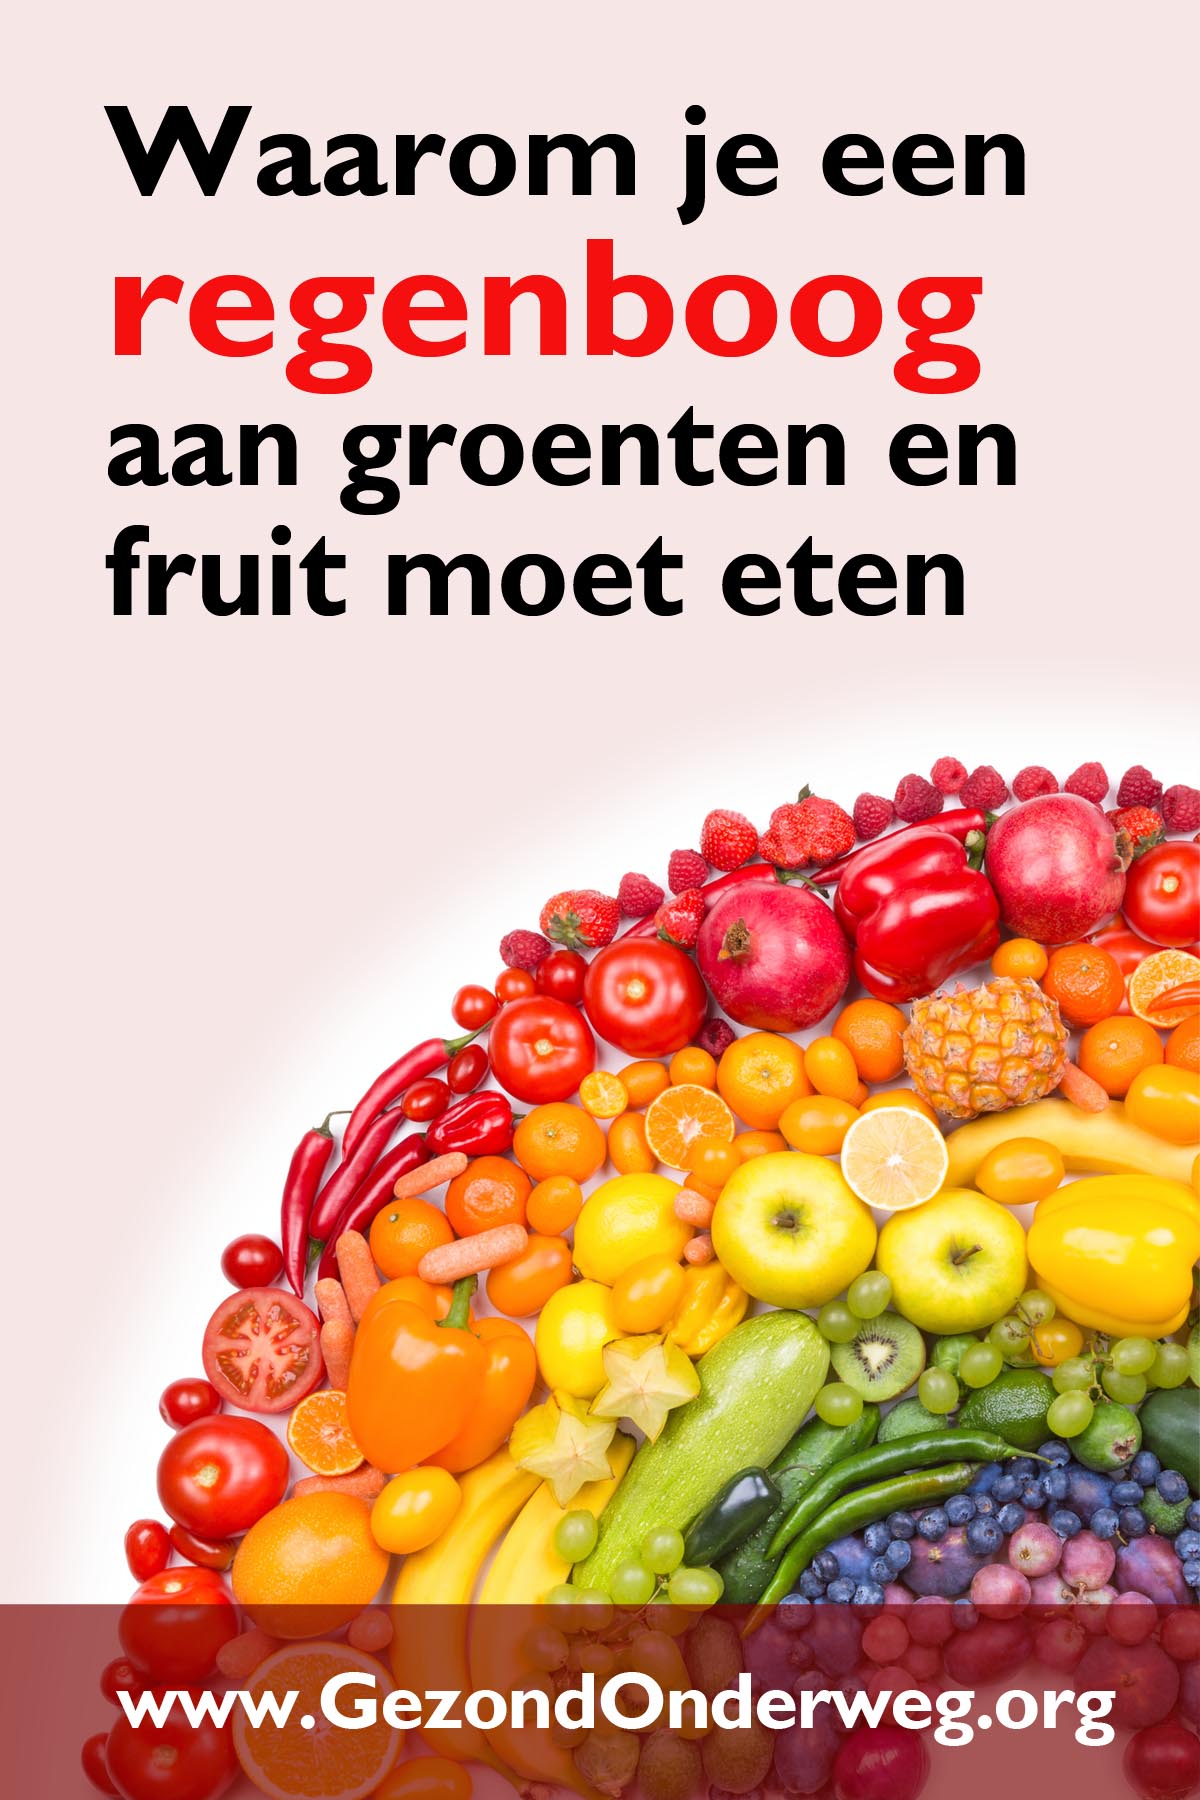 Waarom je een regenboog aan groenten en fruit moet eten